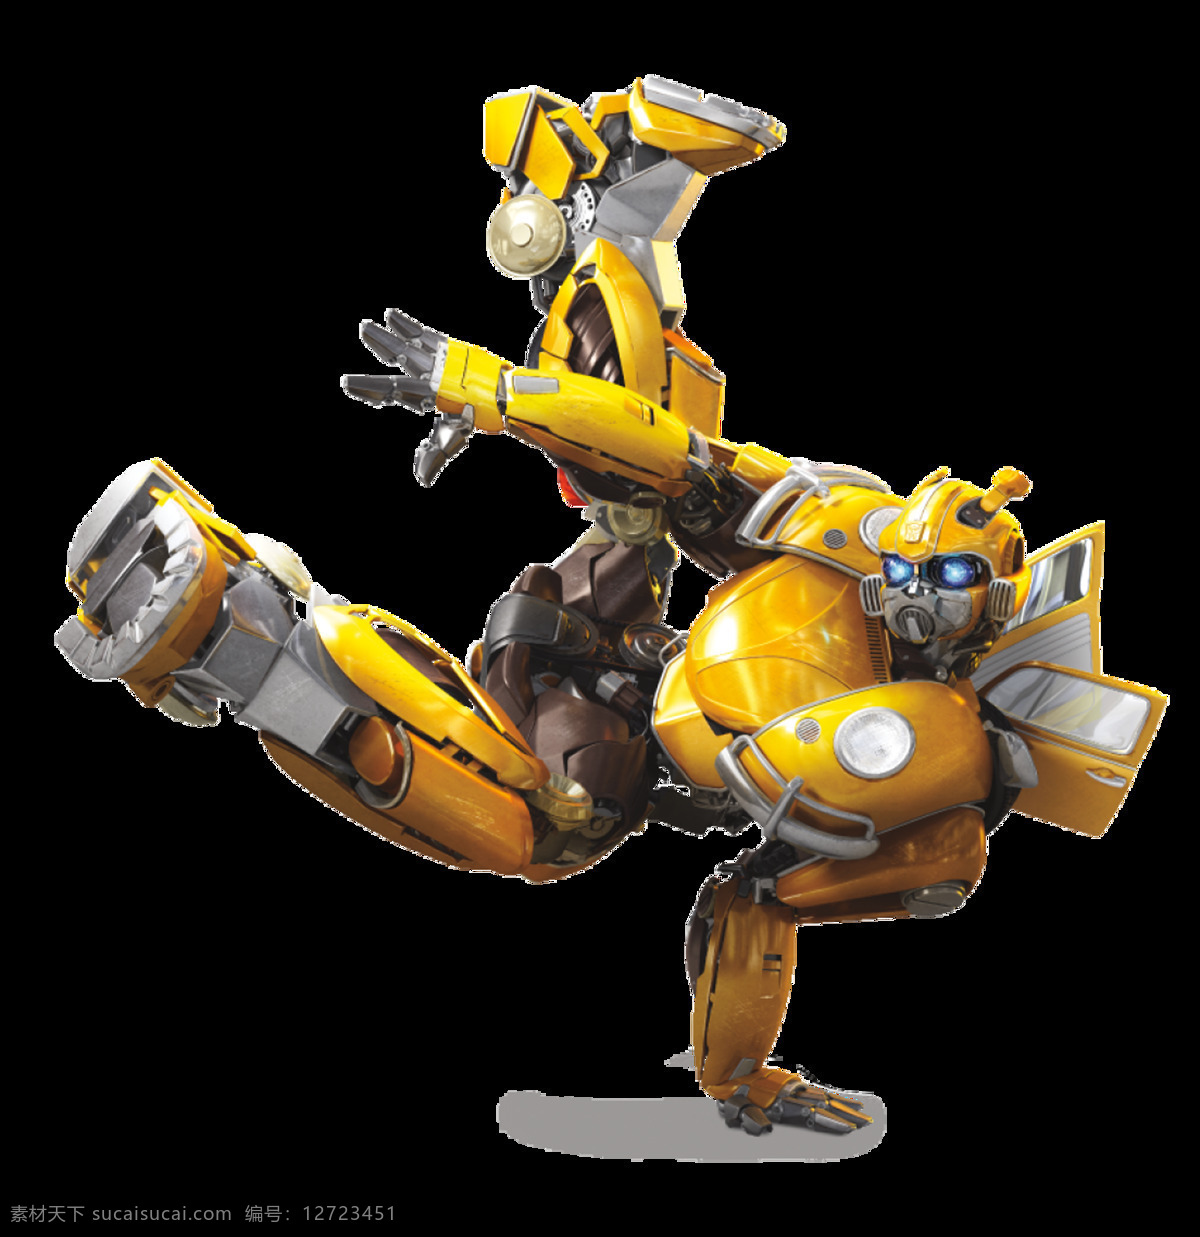 大黄蜂 甲壳虫 变形金刚 电影海报 擎天柱 孩之宝 机器人 汽车人 背景 bumblebee transformers 动画动漫 动漫动画 动漫人物